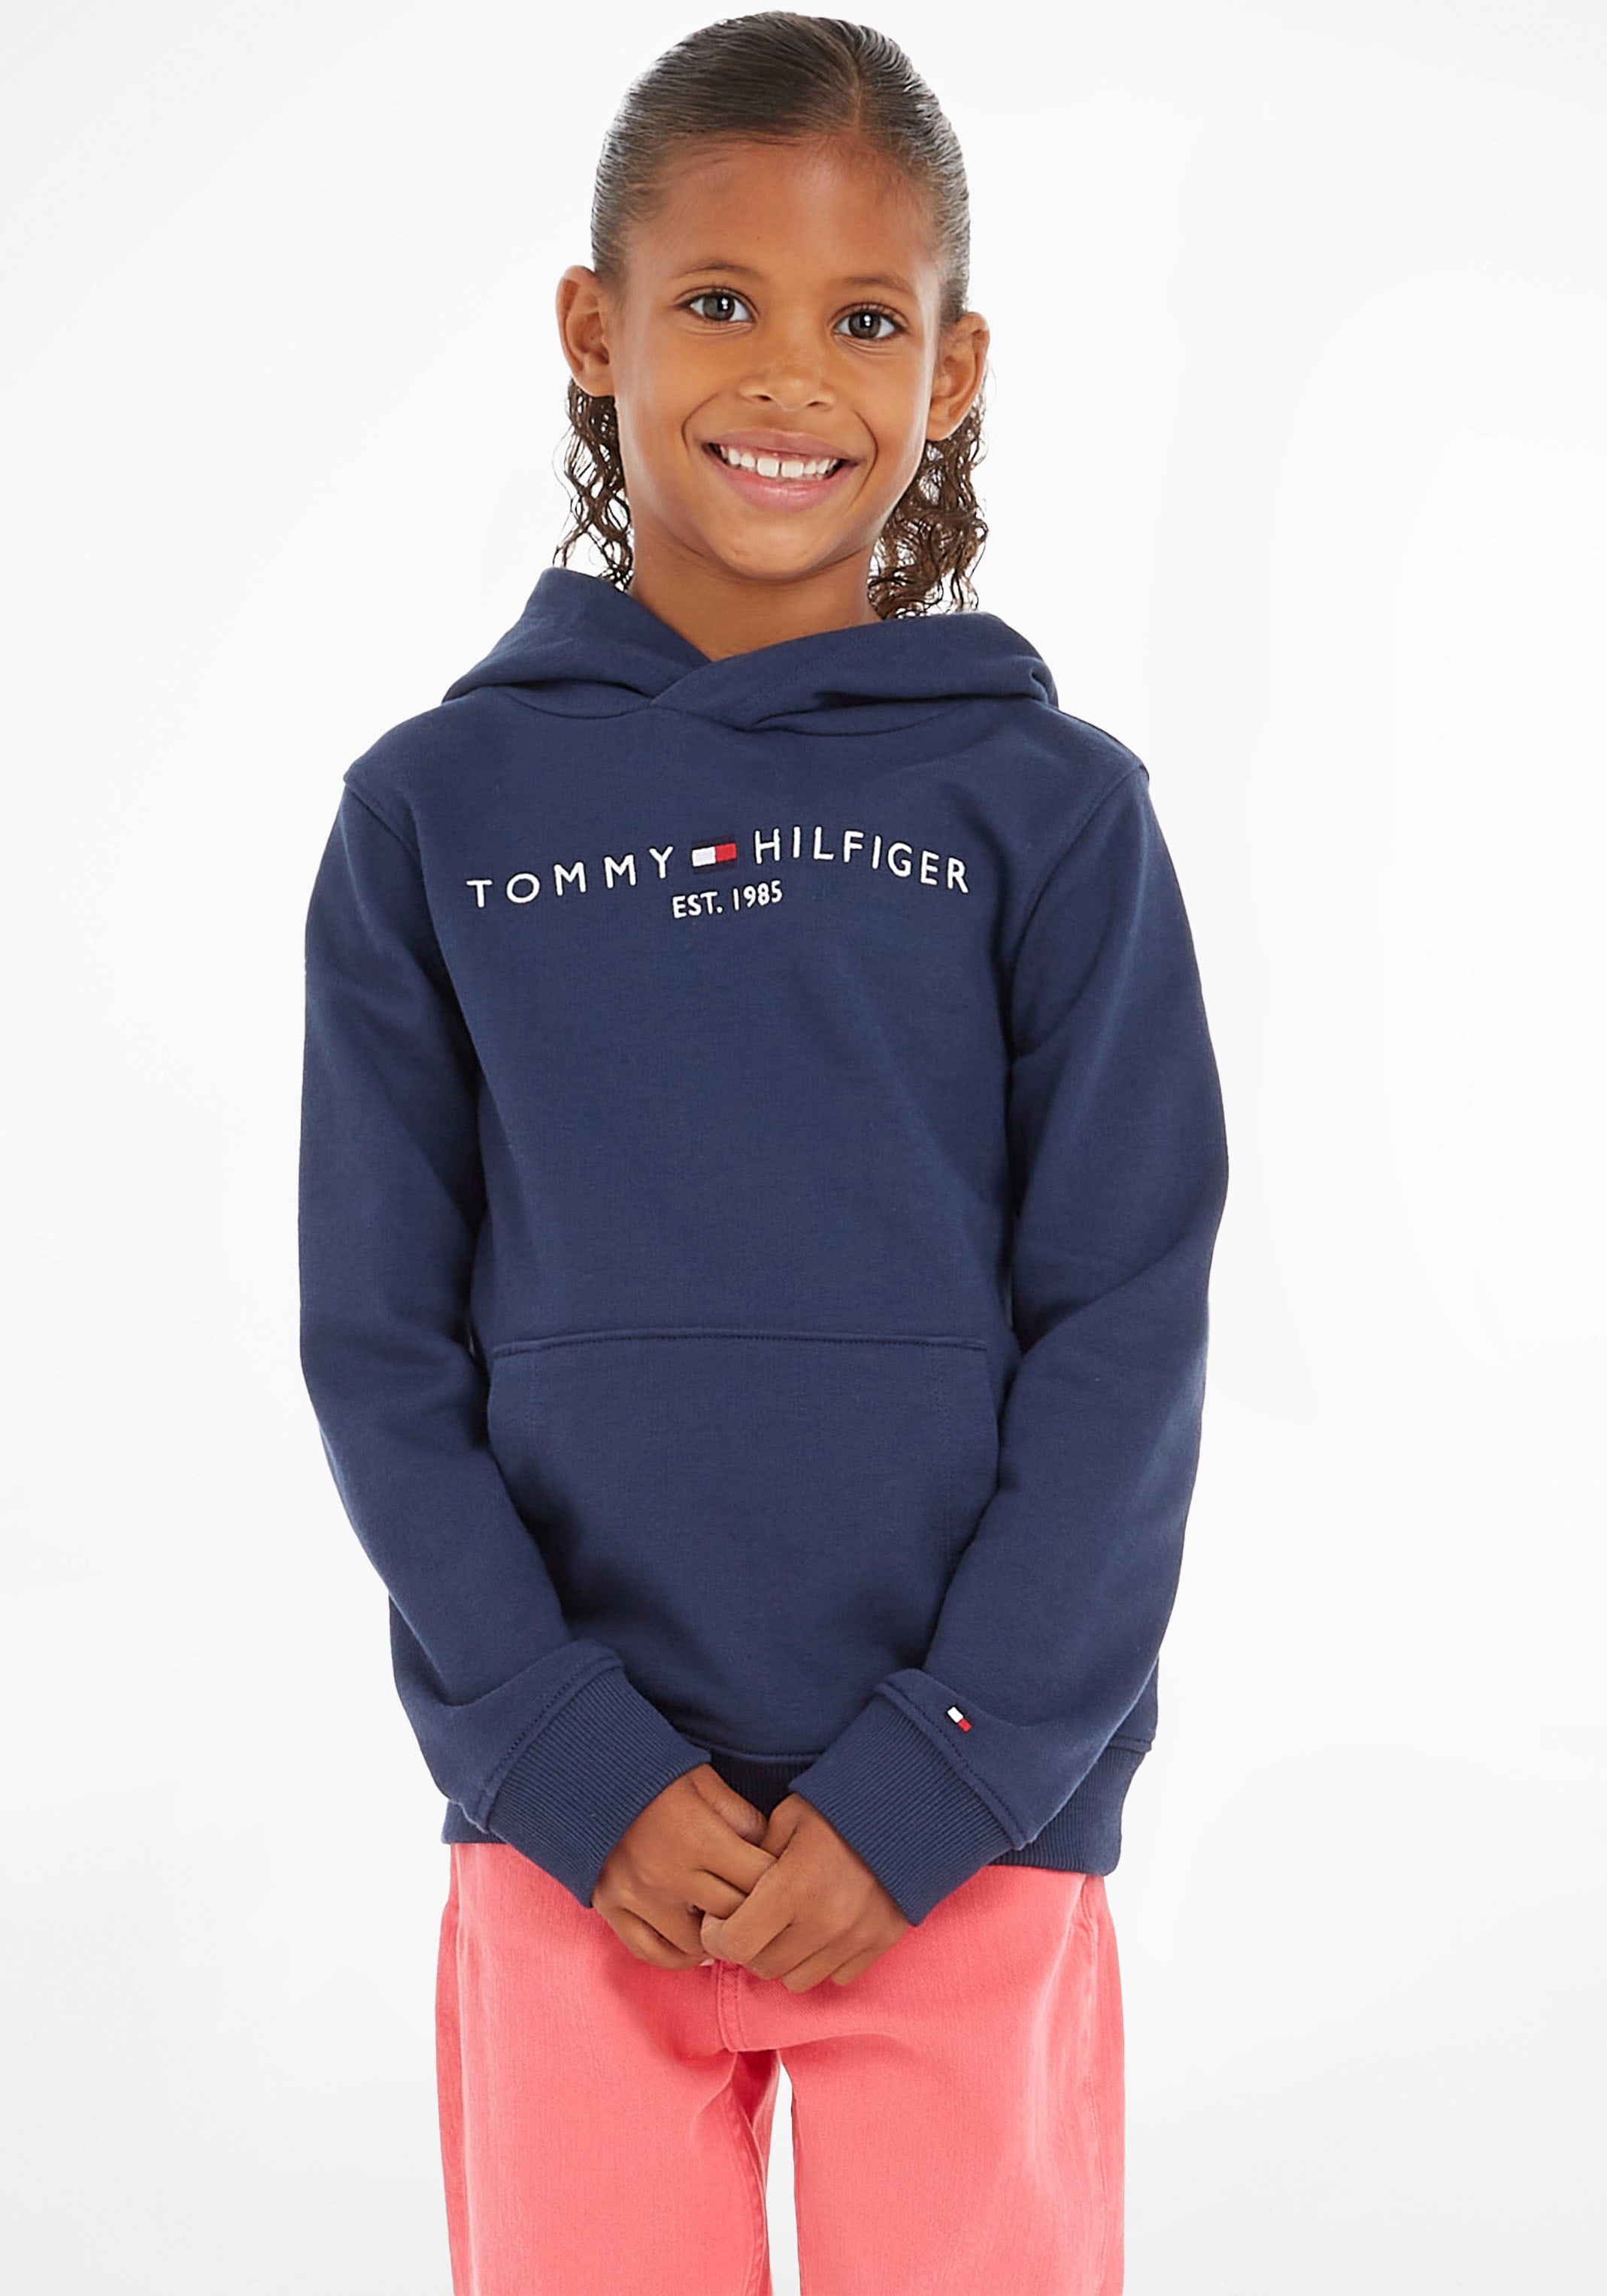 Hilfiger Jungen online Junior Mädchen Kinder und HOODIE«, Kapuzensweatshirt Tommy Kids MiniMe,für »ESSENTIAL bestellen